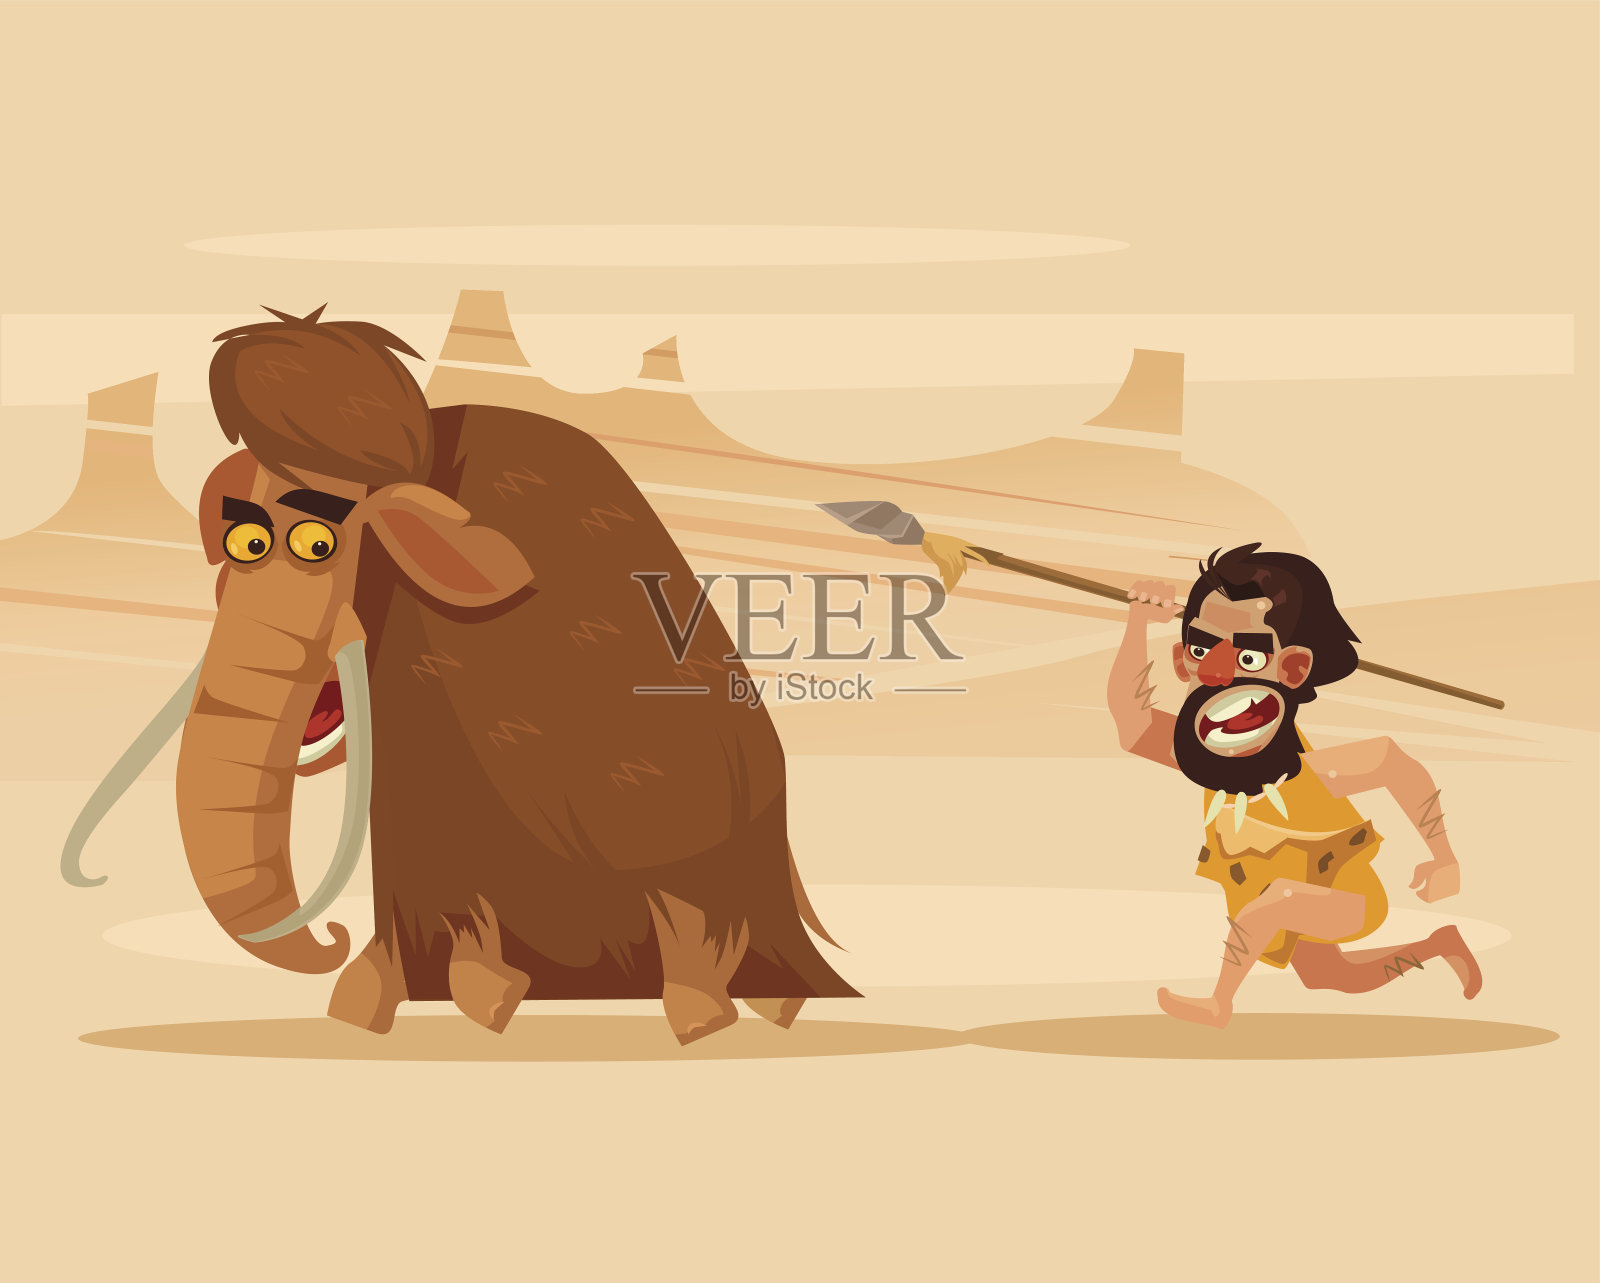 愤怒饥饿的原始穴居人追逐奔跑狩猎的猛犸象插画图片素材